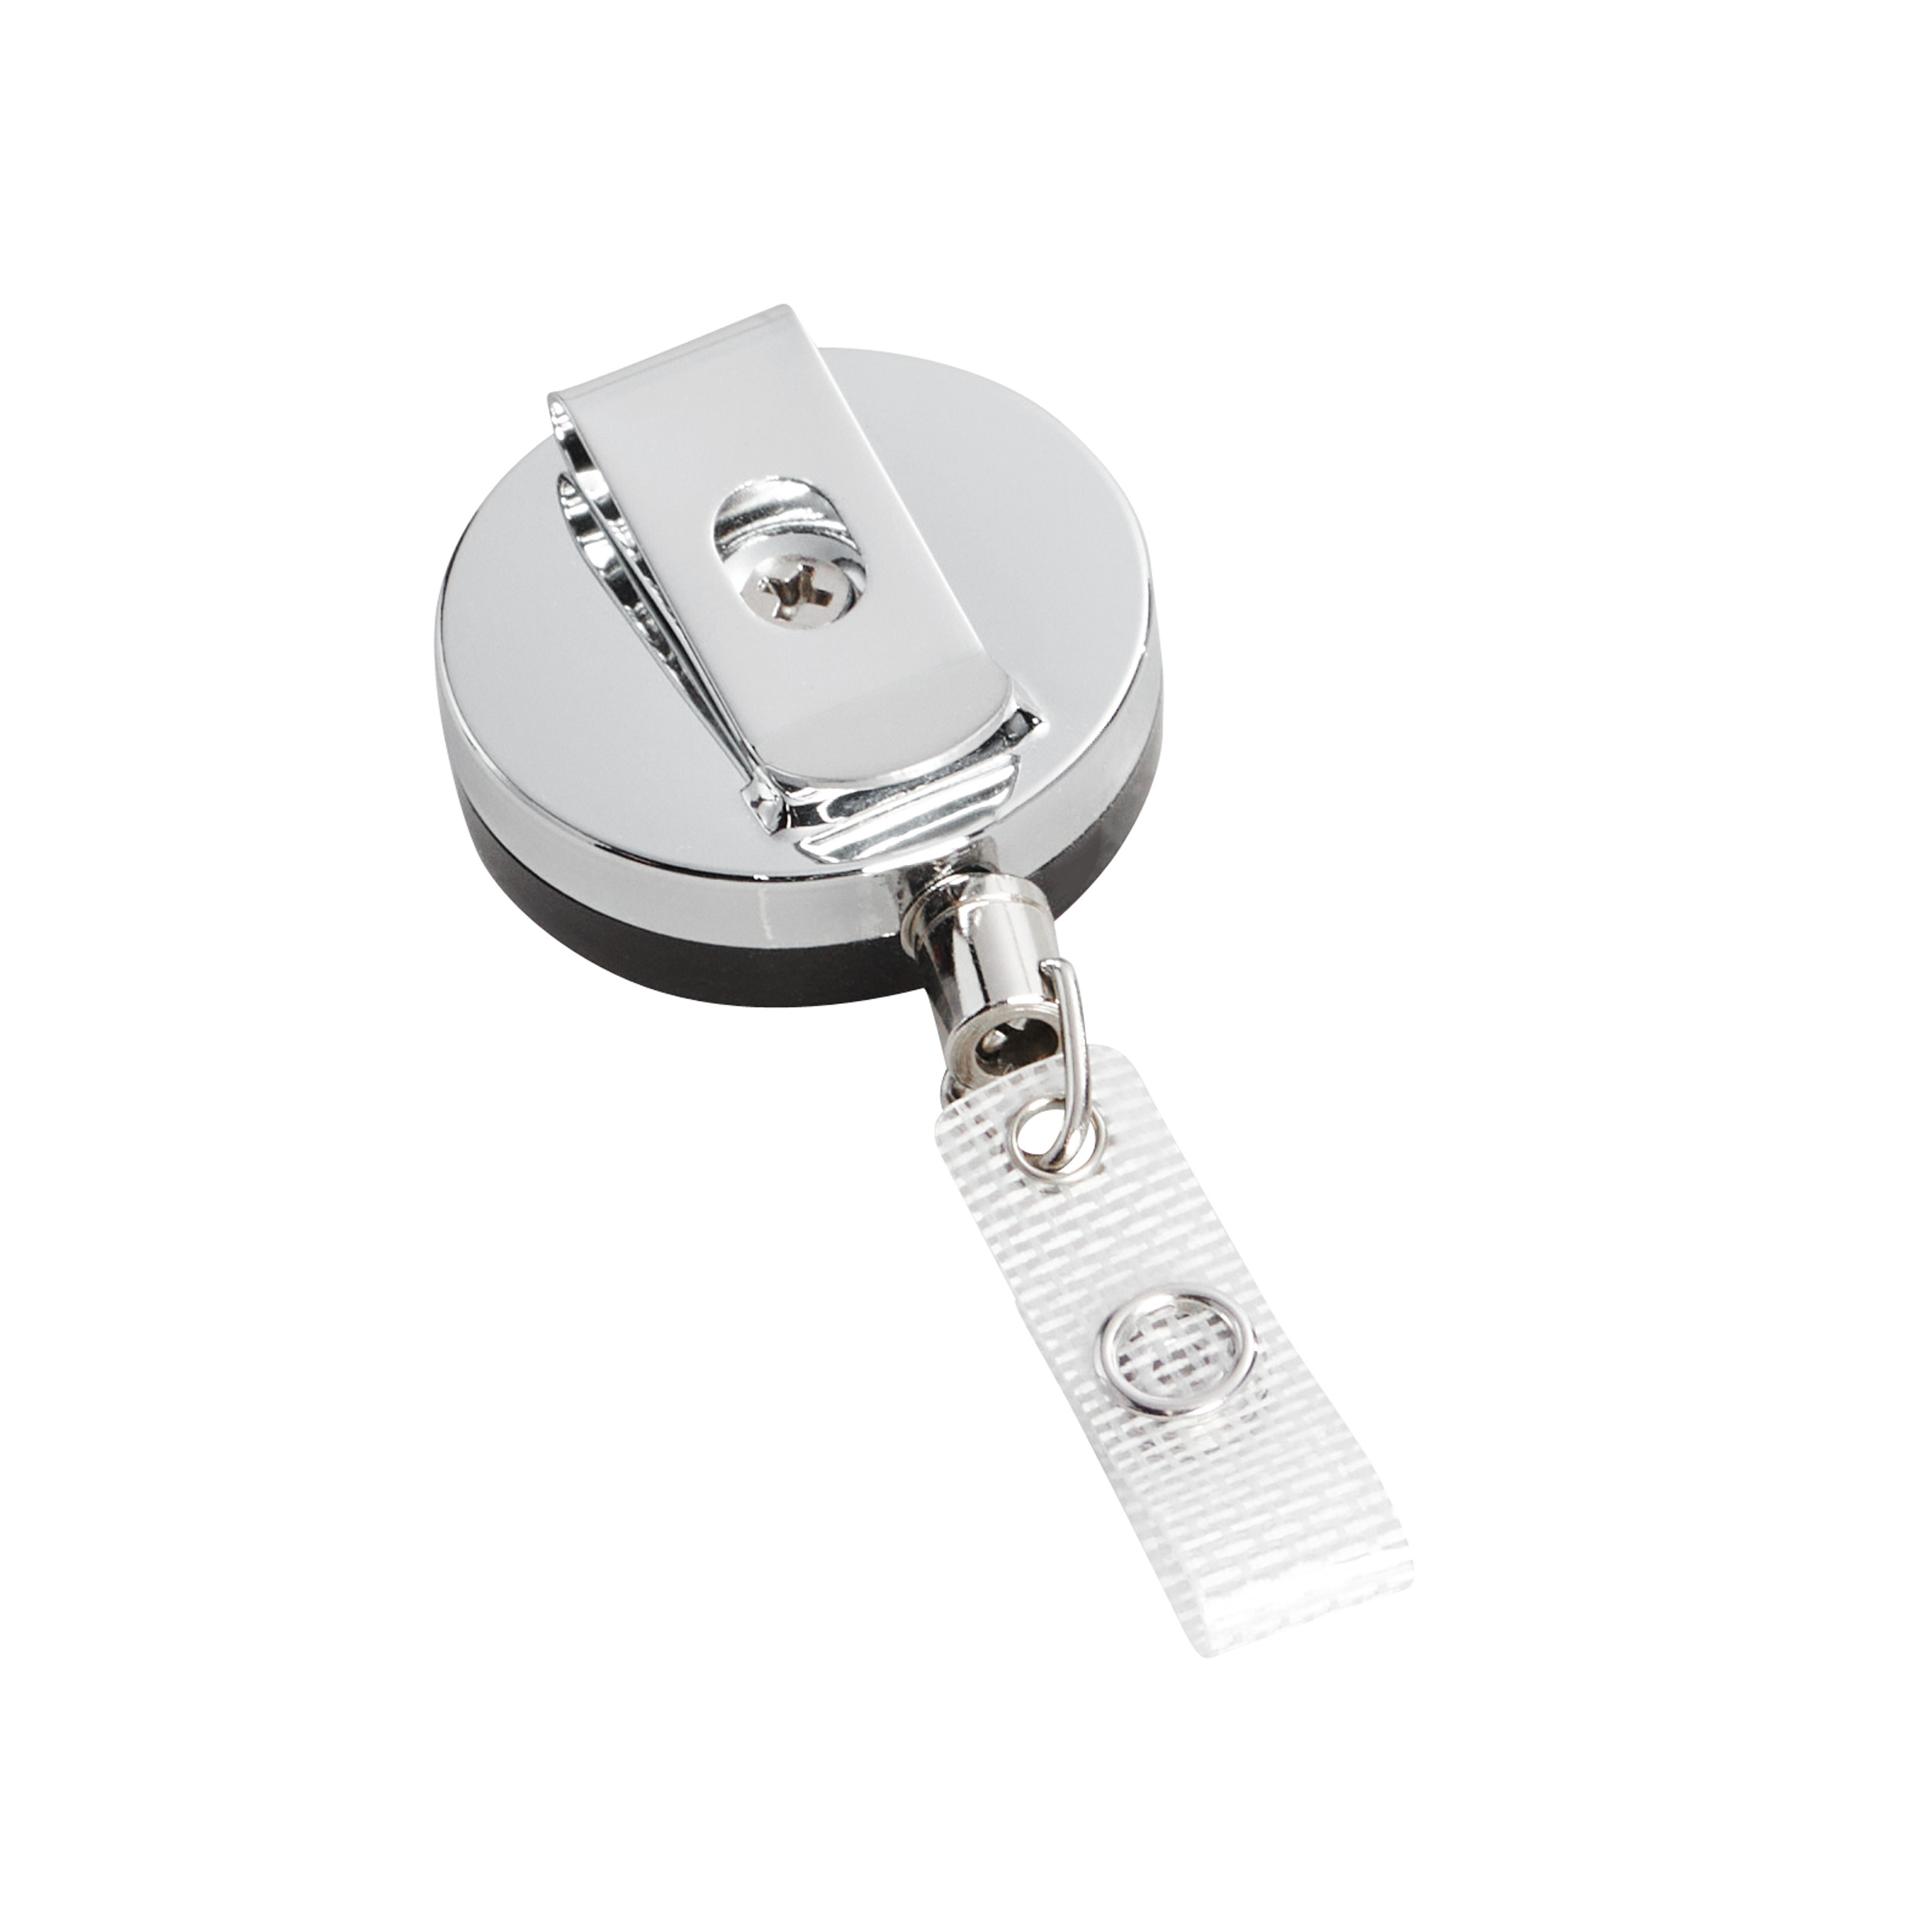 Porte-clés rétractable en métal avec fil d'acier, porte-clés